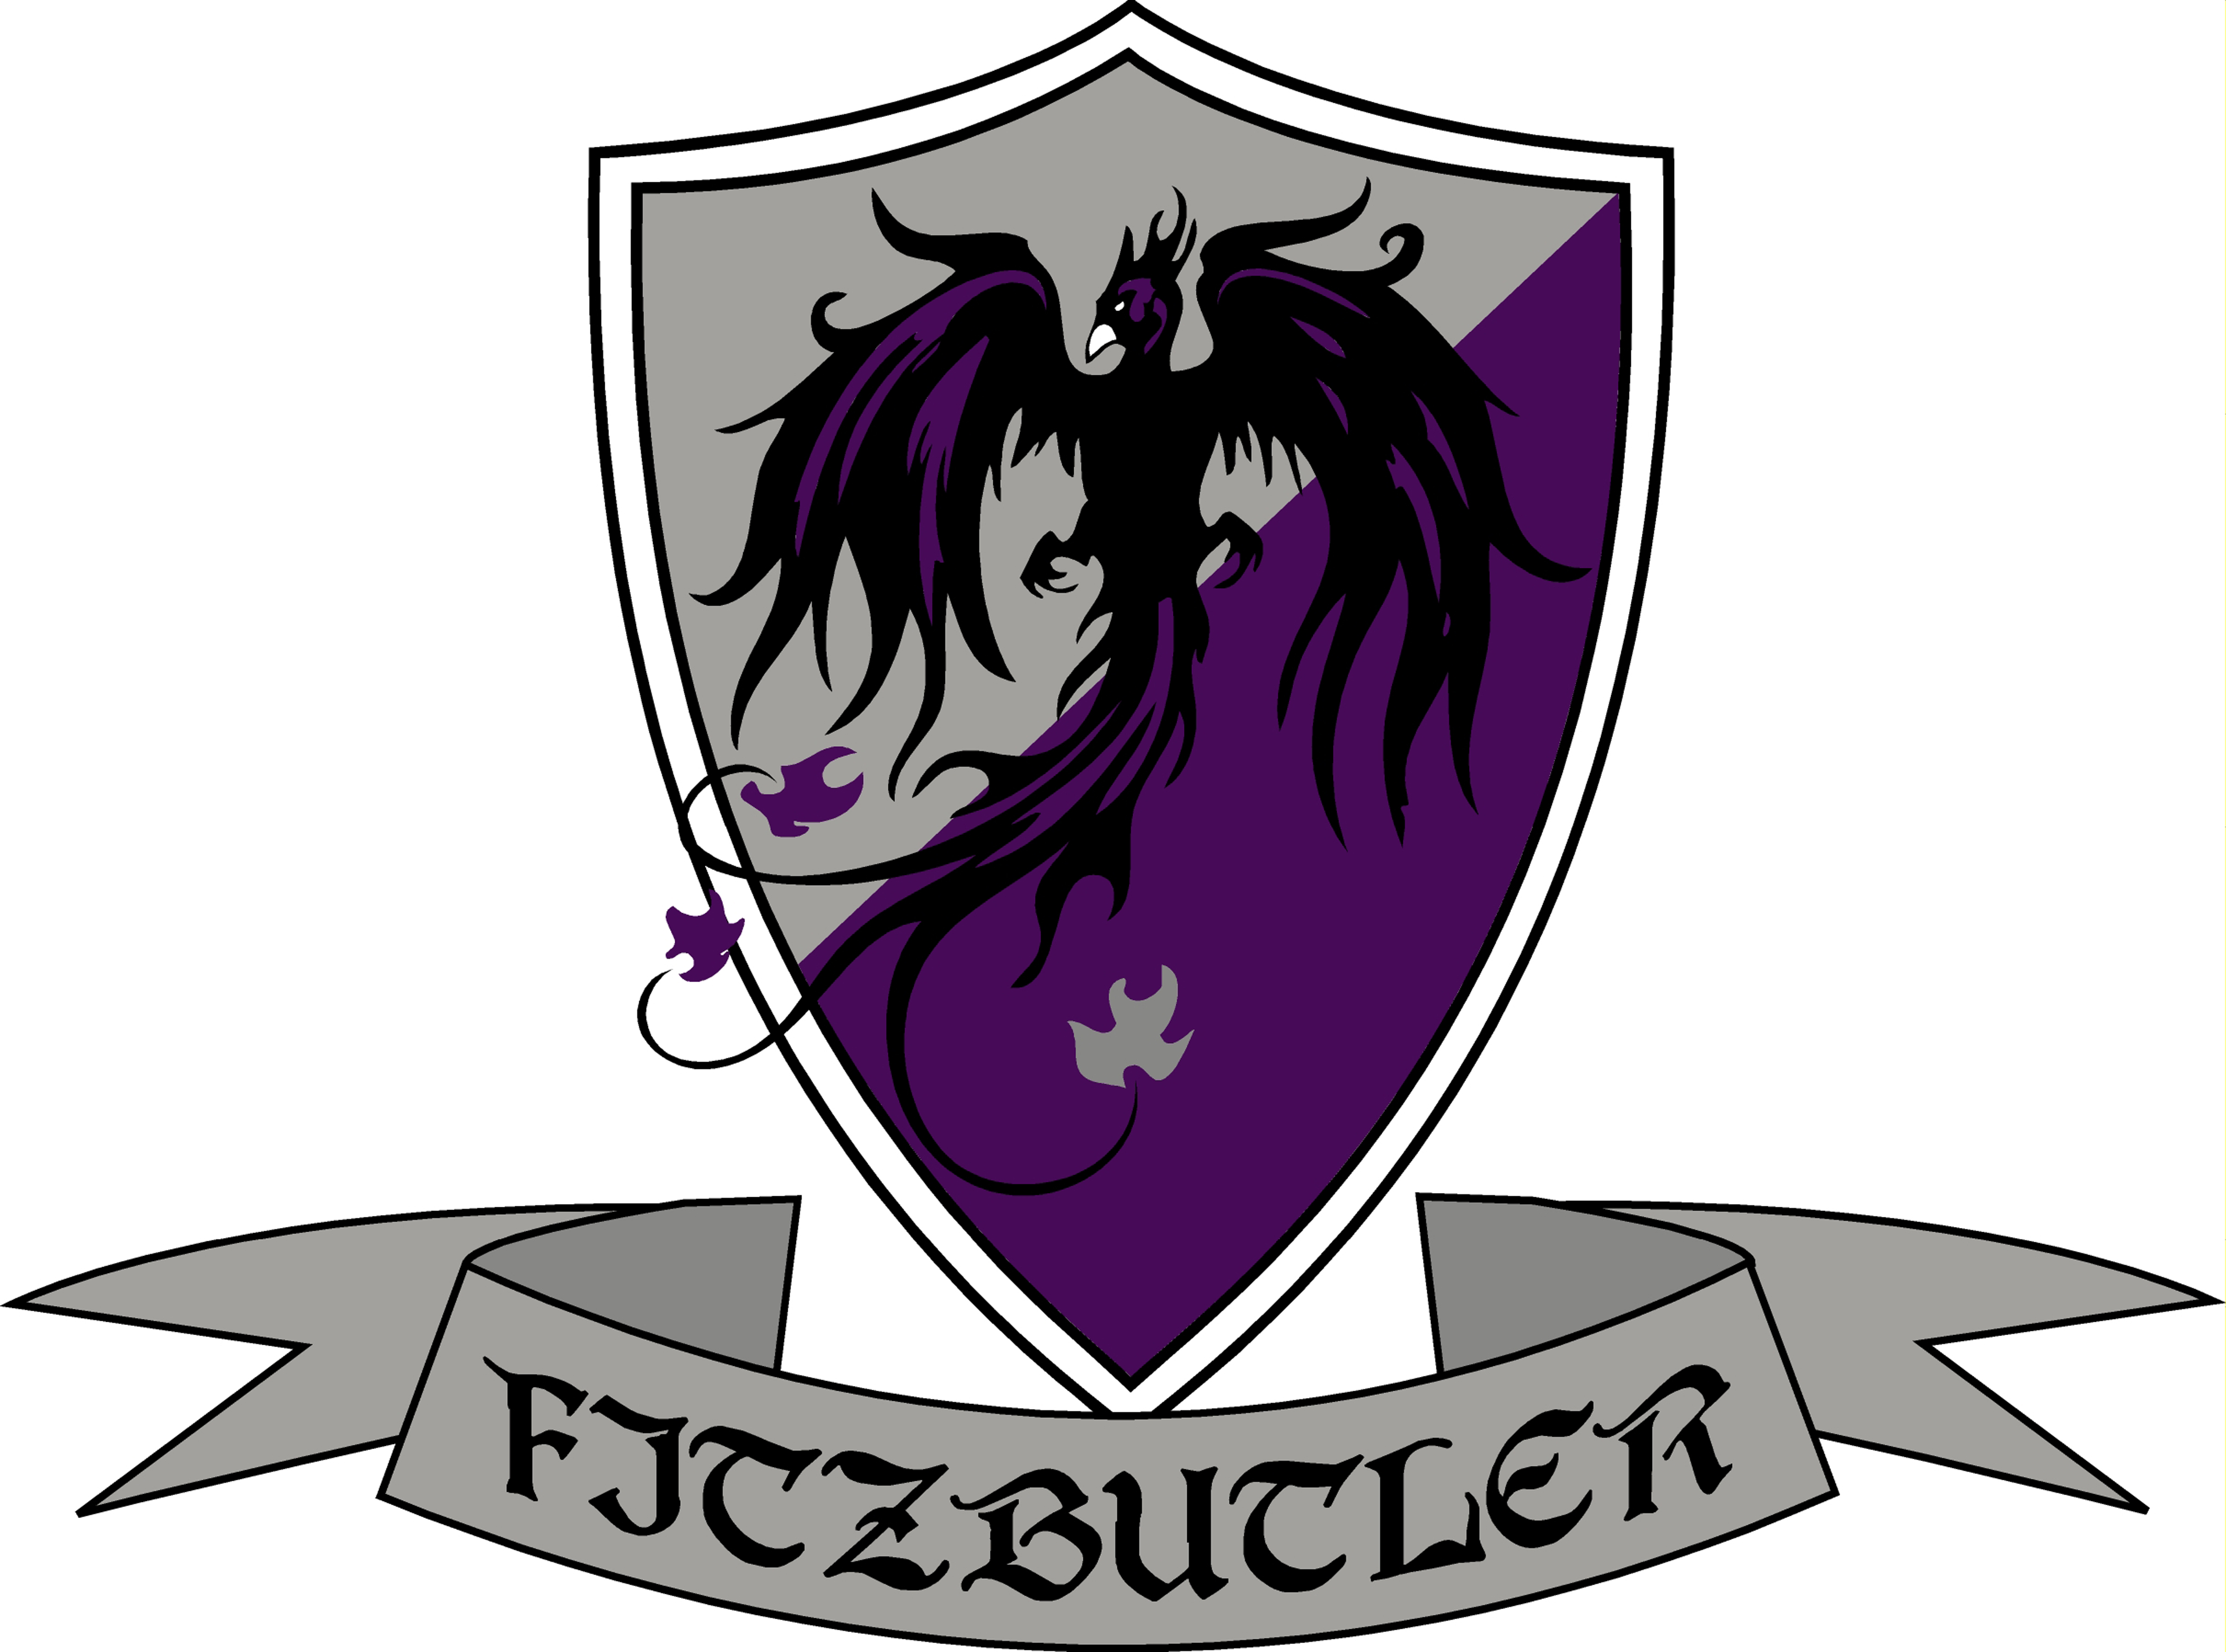 Fitzbutler College Crest